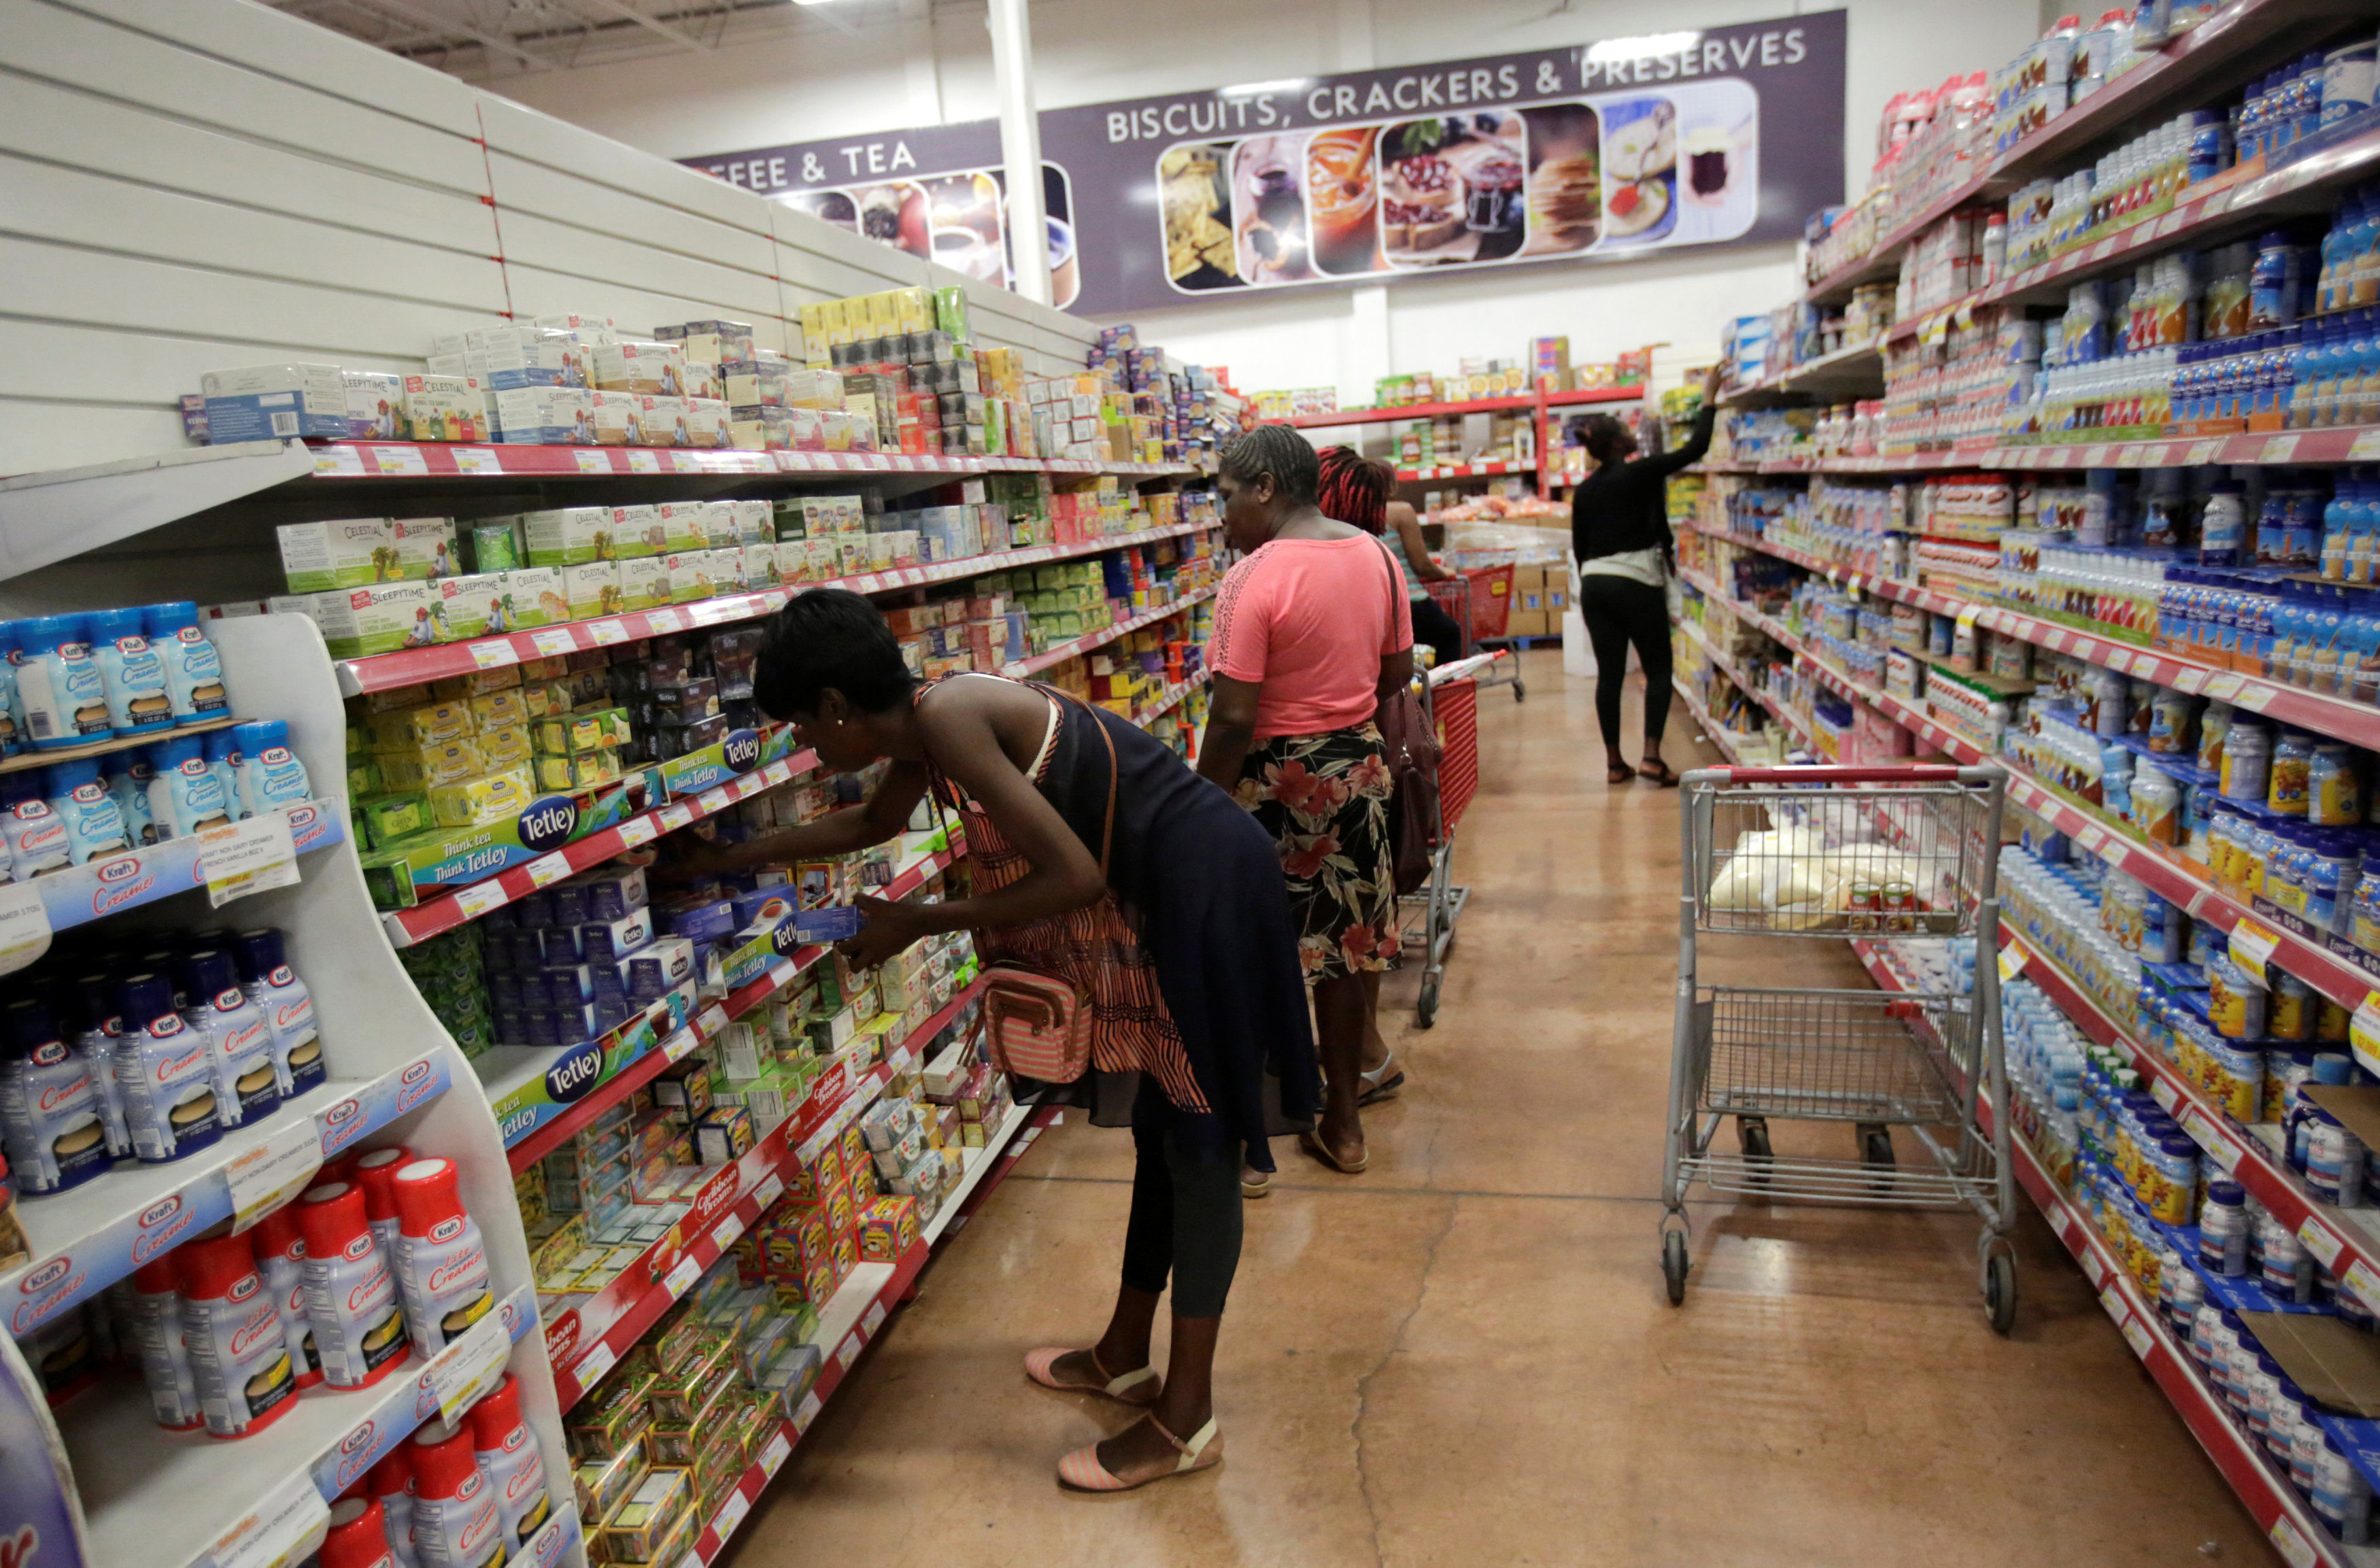 Según el Instituto Estadístico de Jamaica, el índice de precios al consumidor (IPC) de ese país anotó un importante avance del 1,3% durante diciembre pasado, lo que llevó a la inflación anual a un 6,4% en todo el año. Compradores en Kingston, Jamaica, octubre de 2016. Foto: REUTERS/Henry Romero